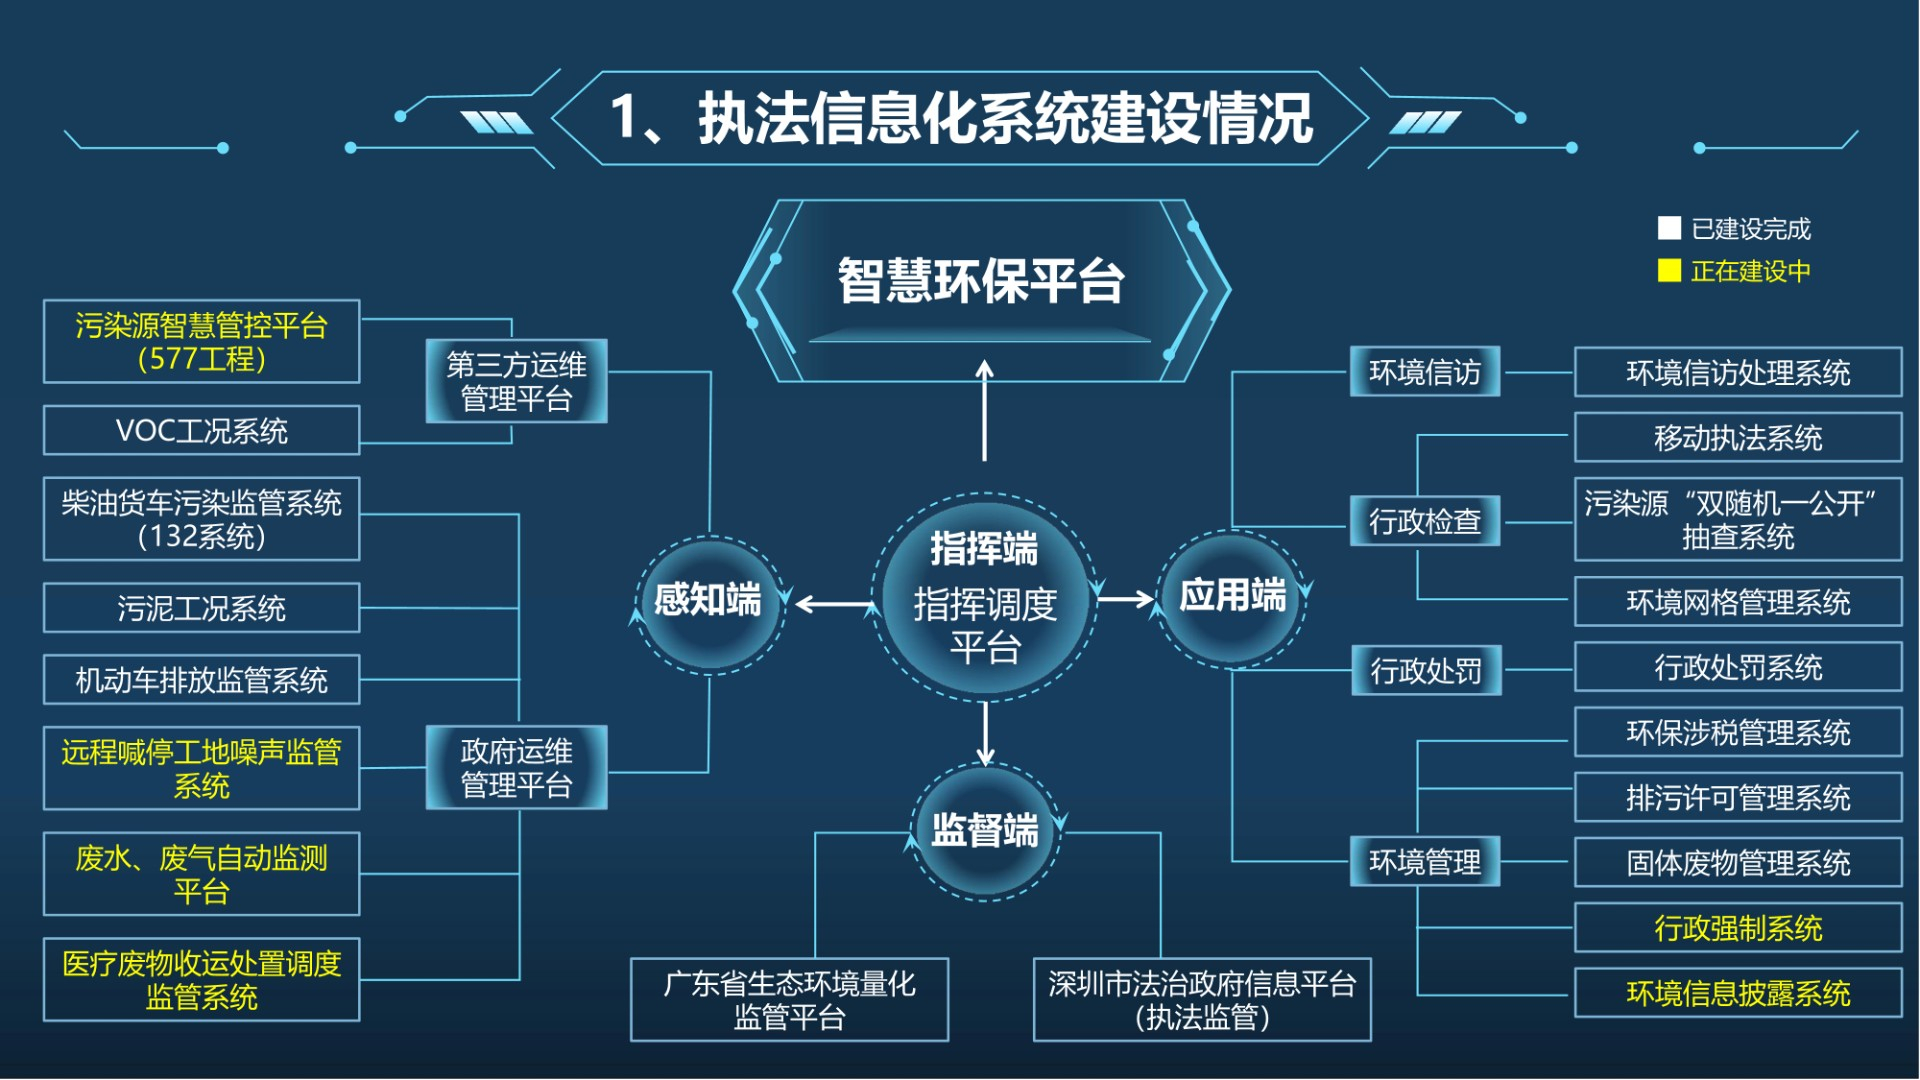 深圳市生态环境执法信息化系统感知端框架图.jpg